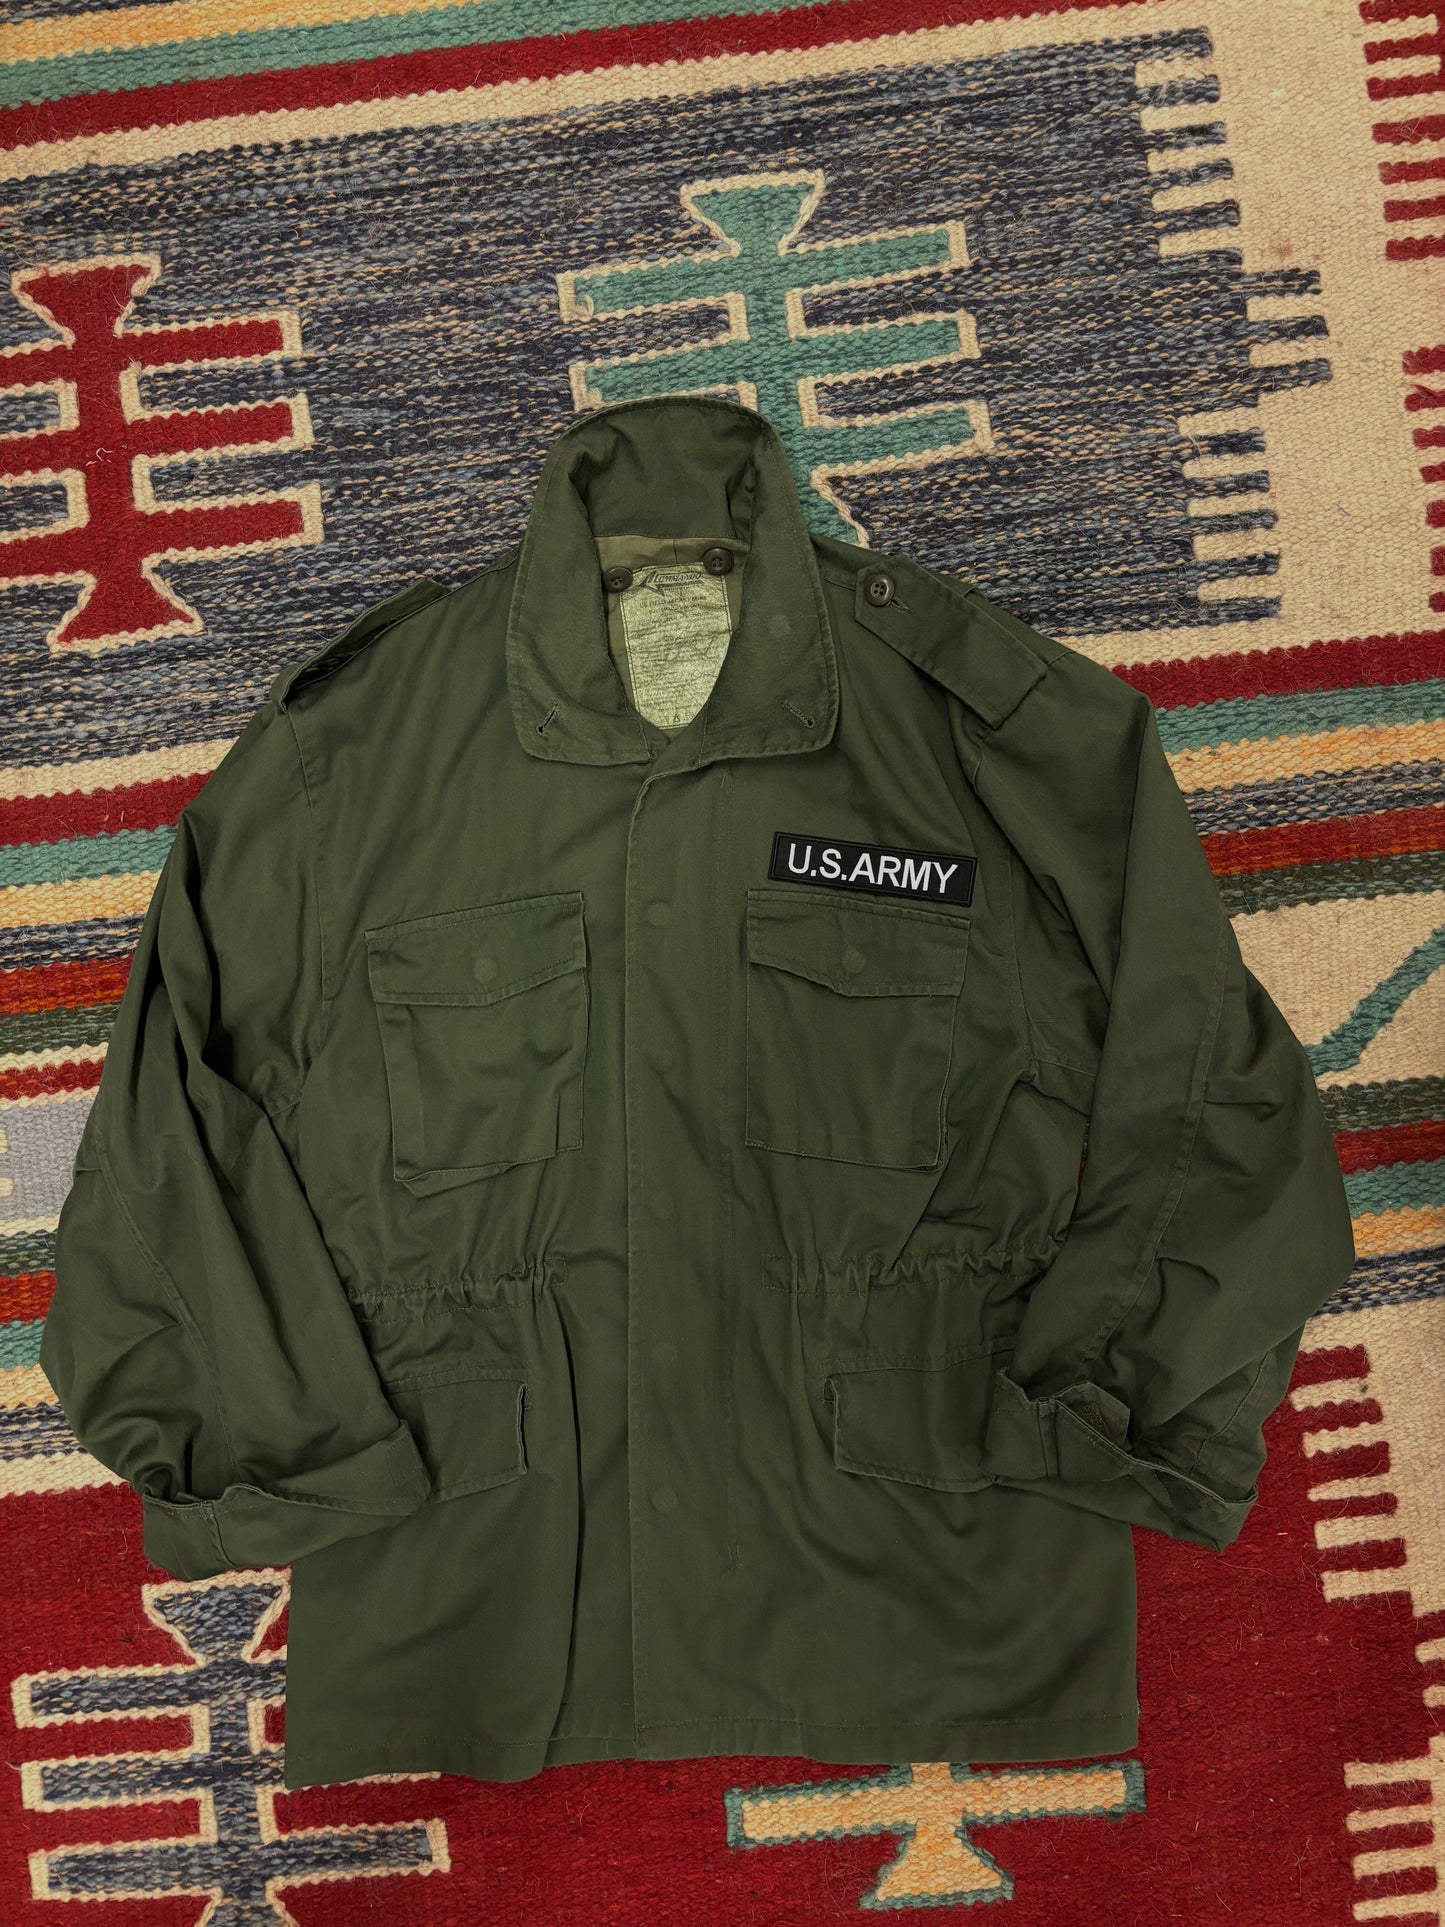 Field jacket m-65 🇺🇸